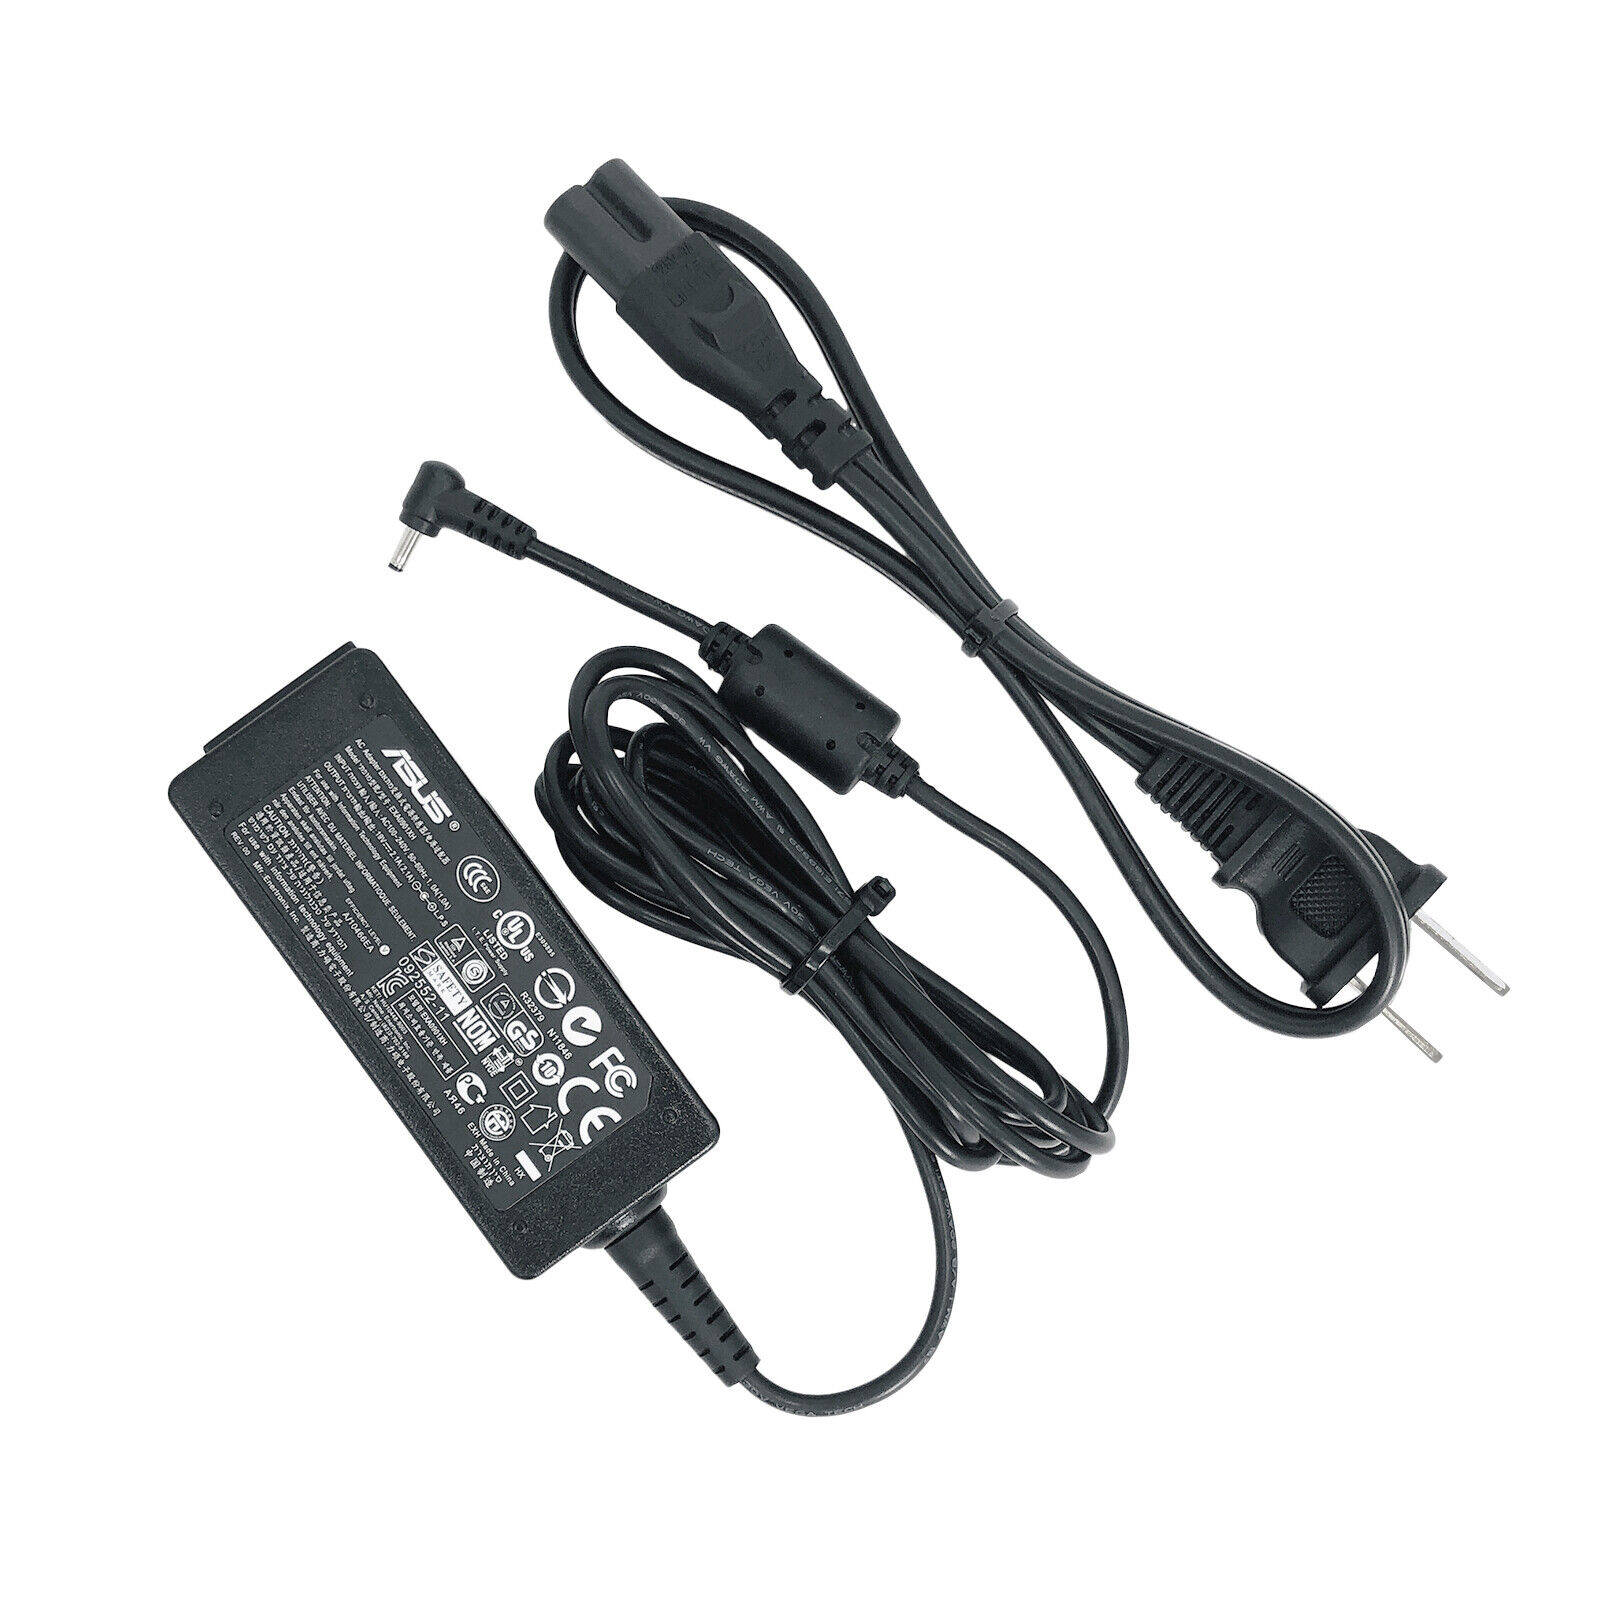 Genuine AC Adapter for Asus Eee PC 1201N 1201NL 1201T Netbook